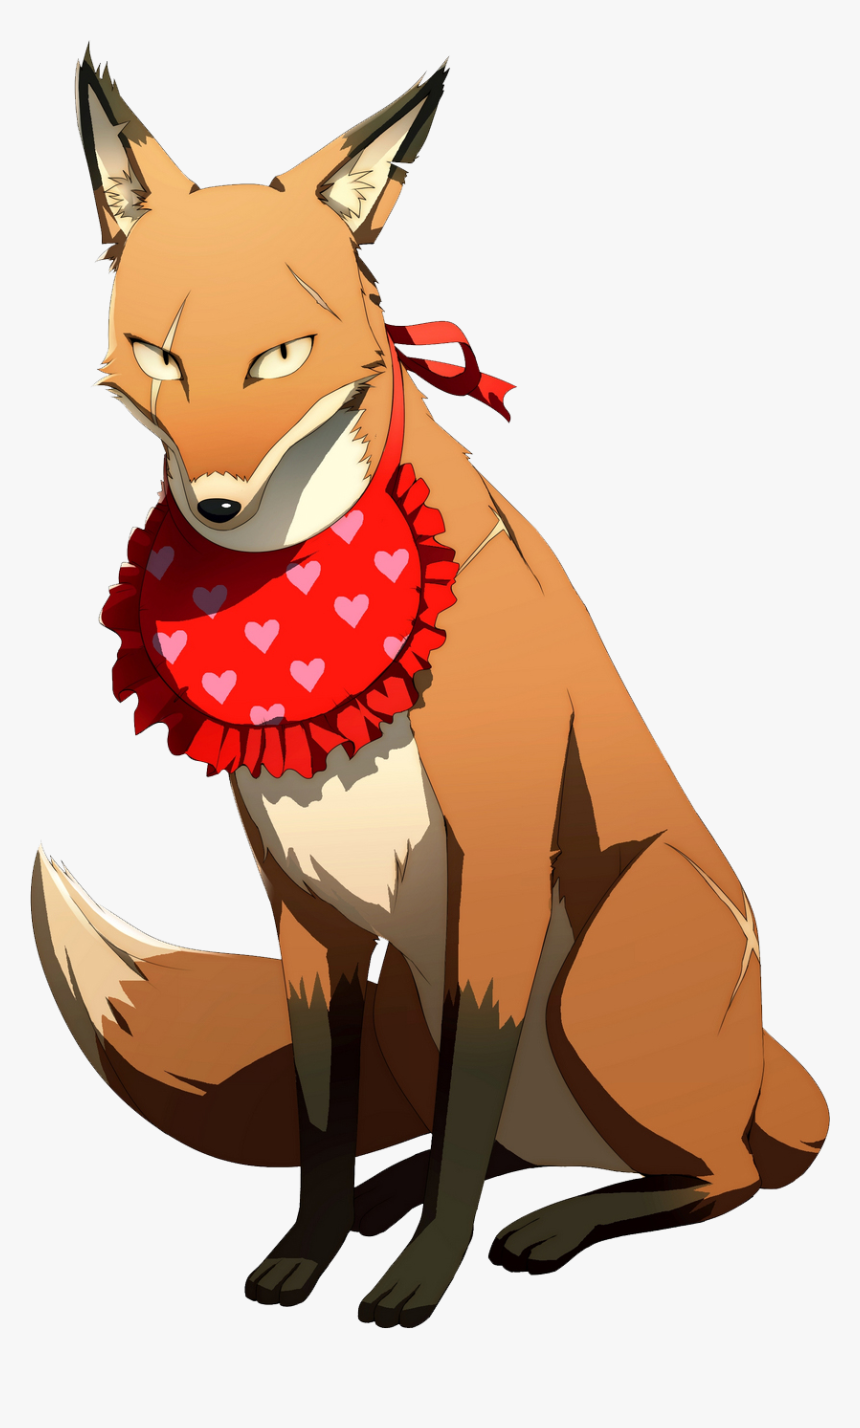 P fox. Persona 4 Fox. Лиса персонаж.